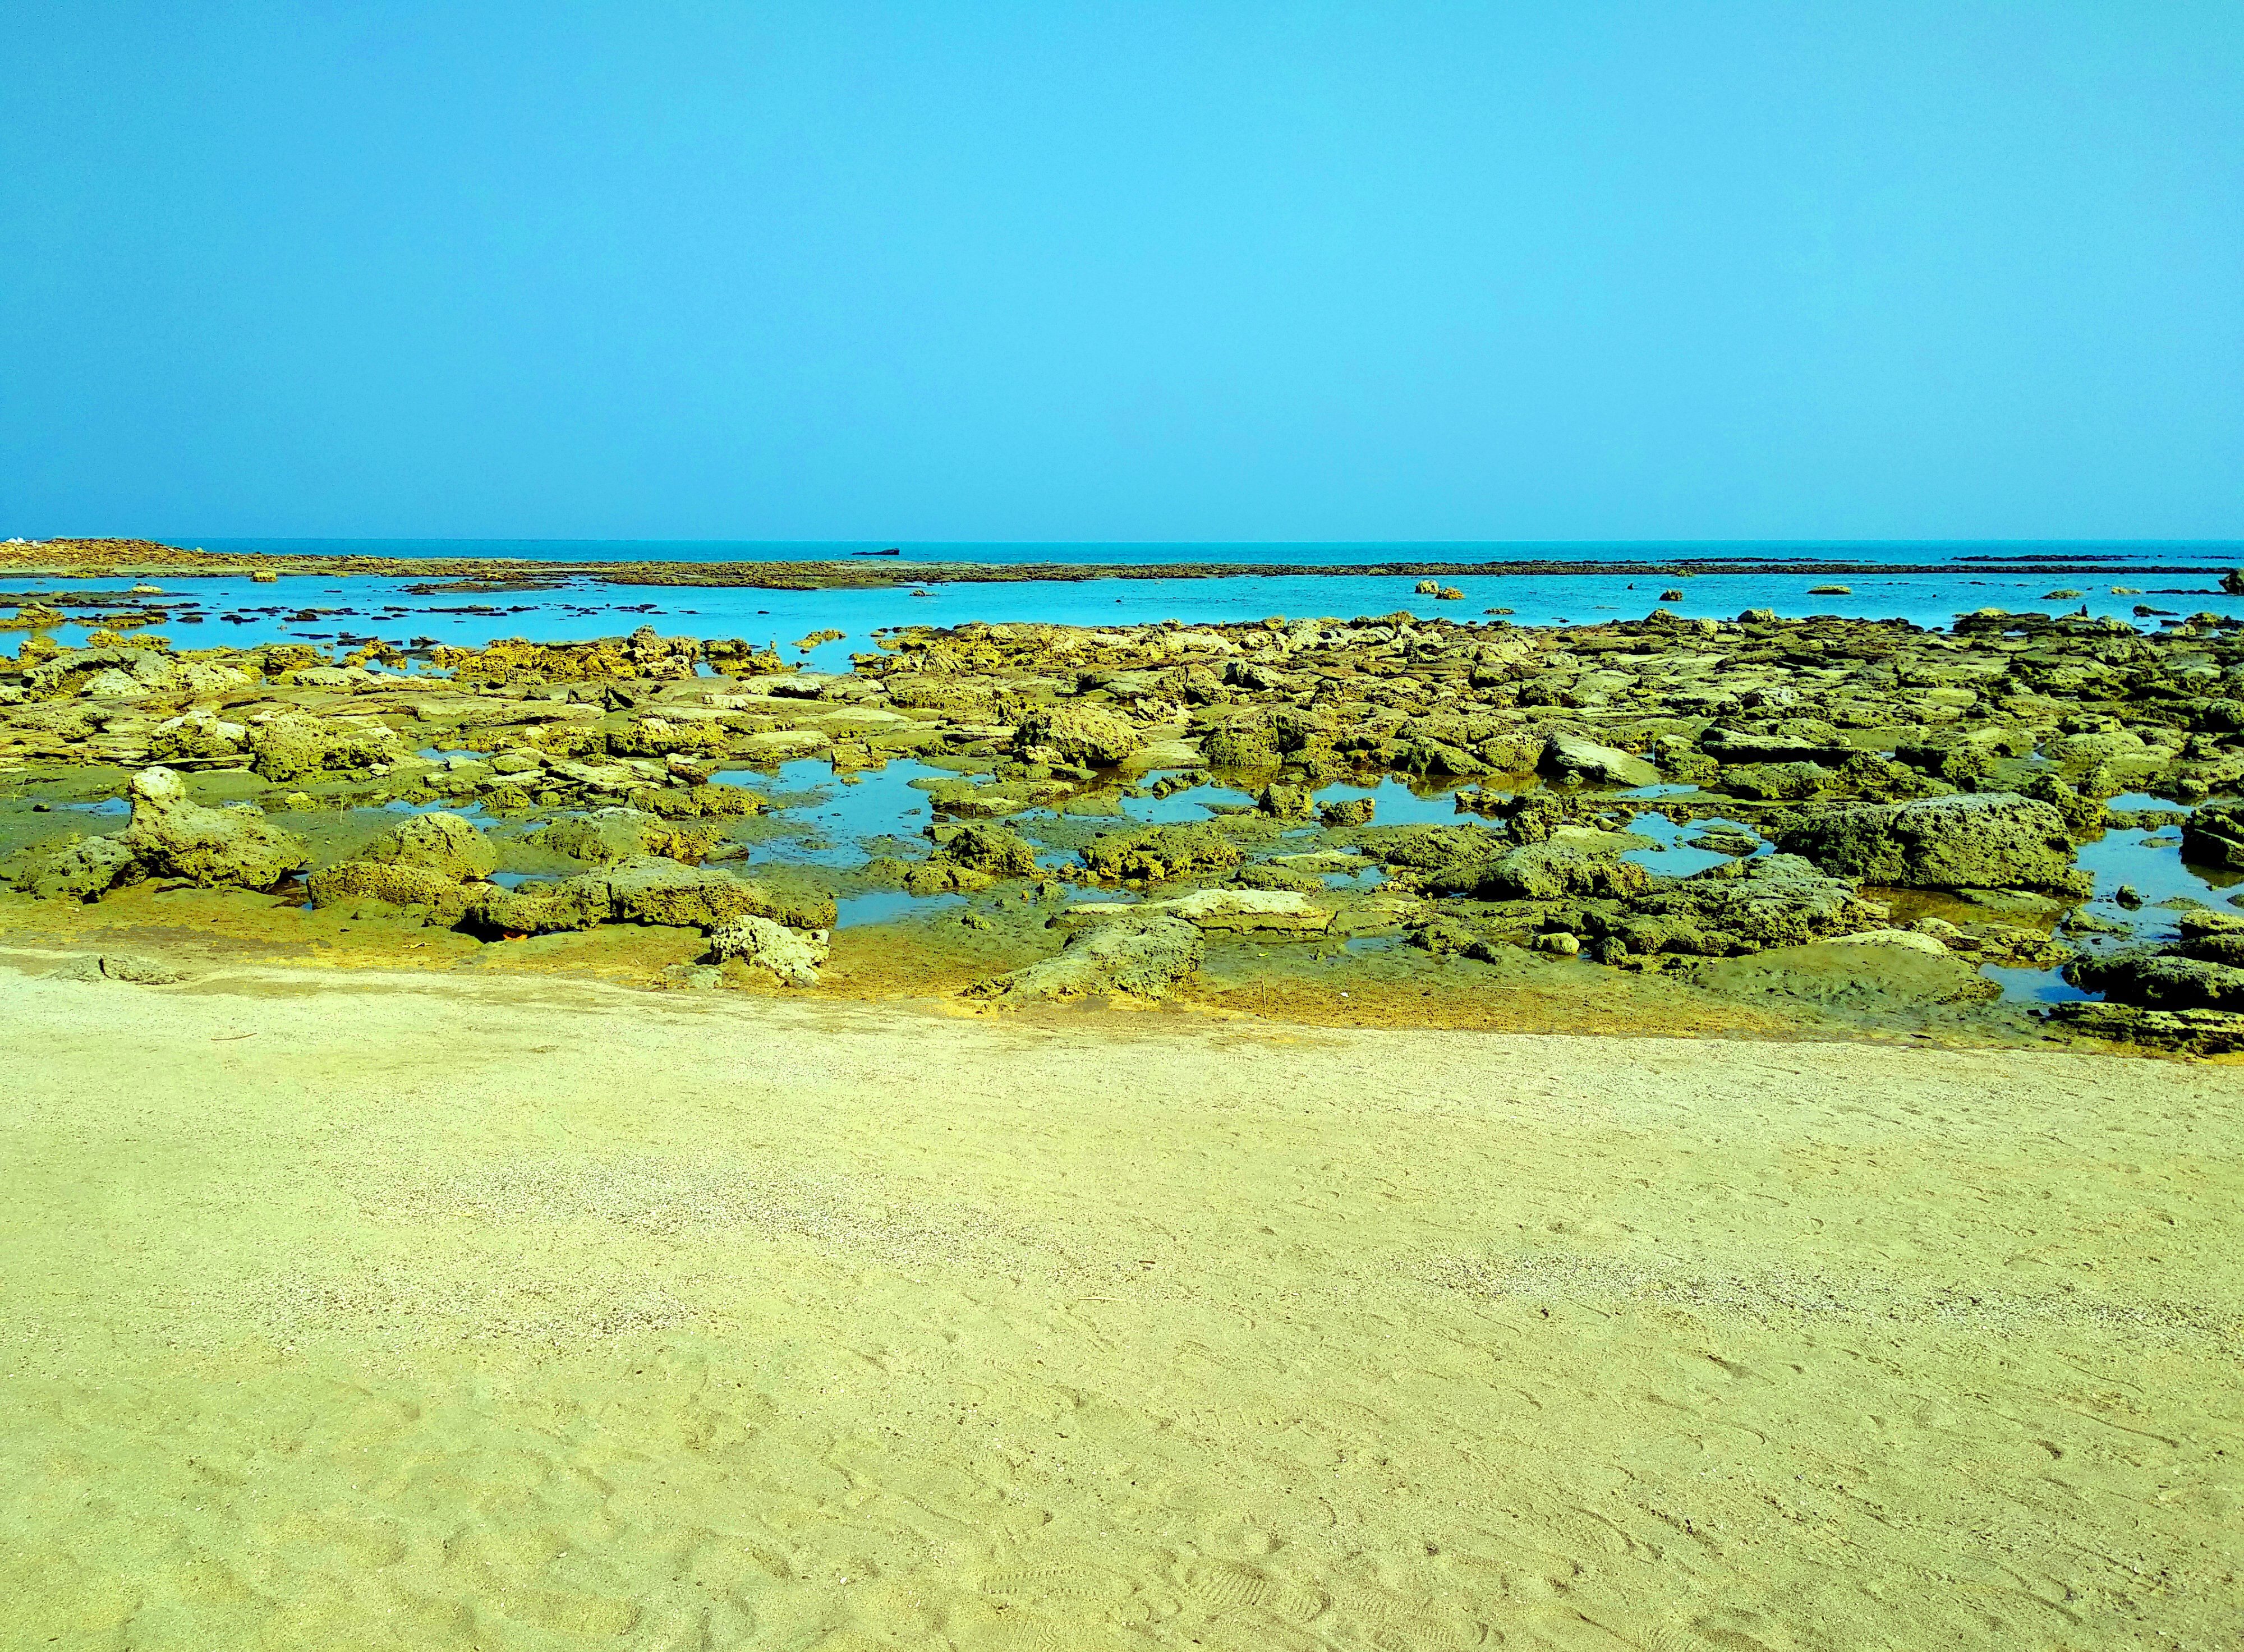 Coral sea beach of chera dwip, saint martin's island photo